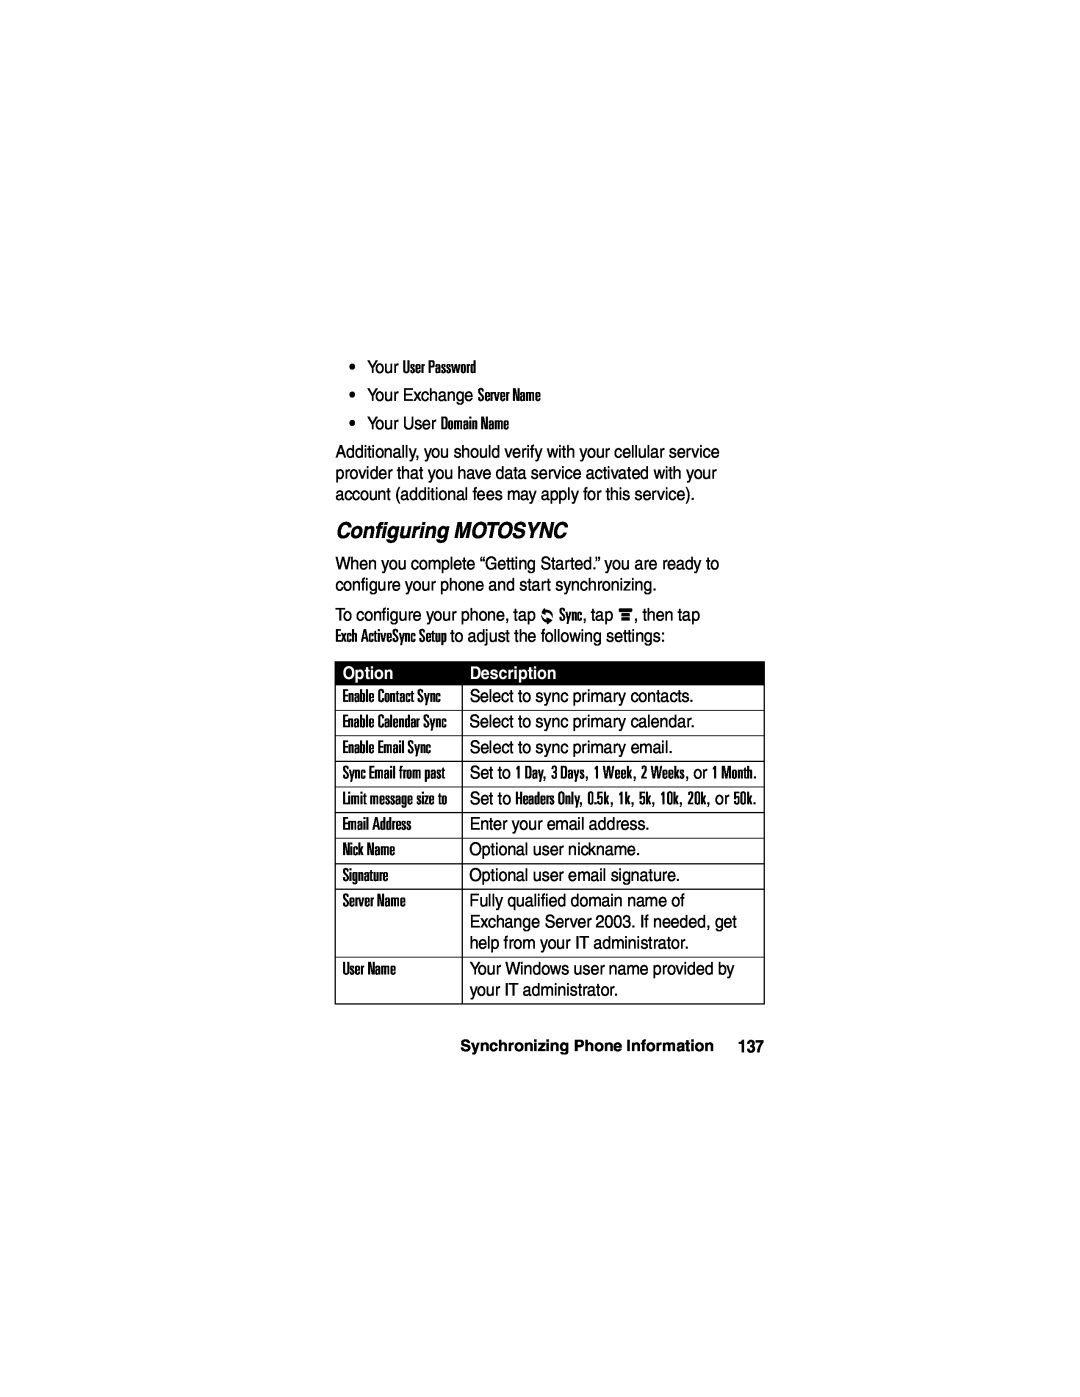 Motorola A780 manual Configuring MOTOSYNC, Option, Description 